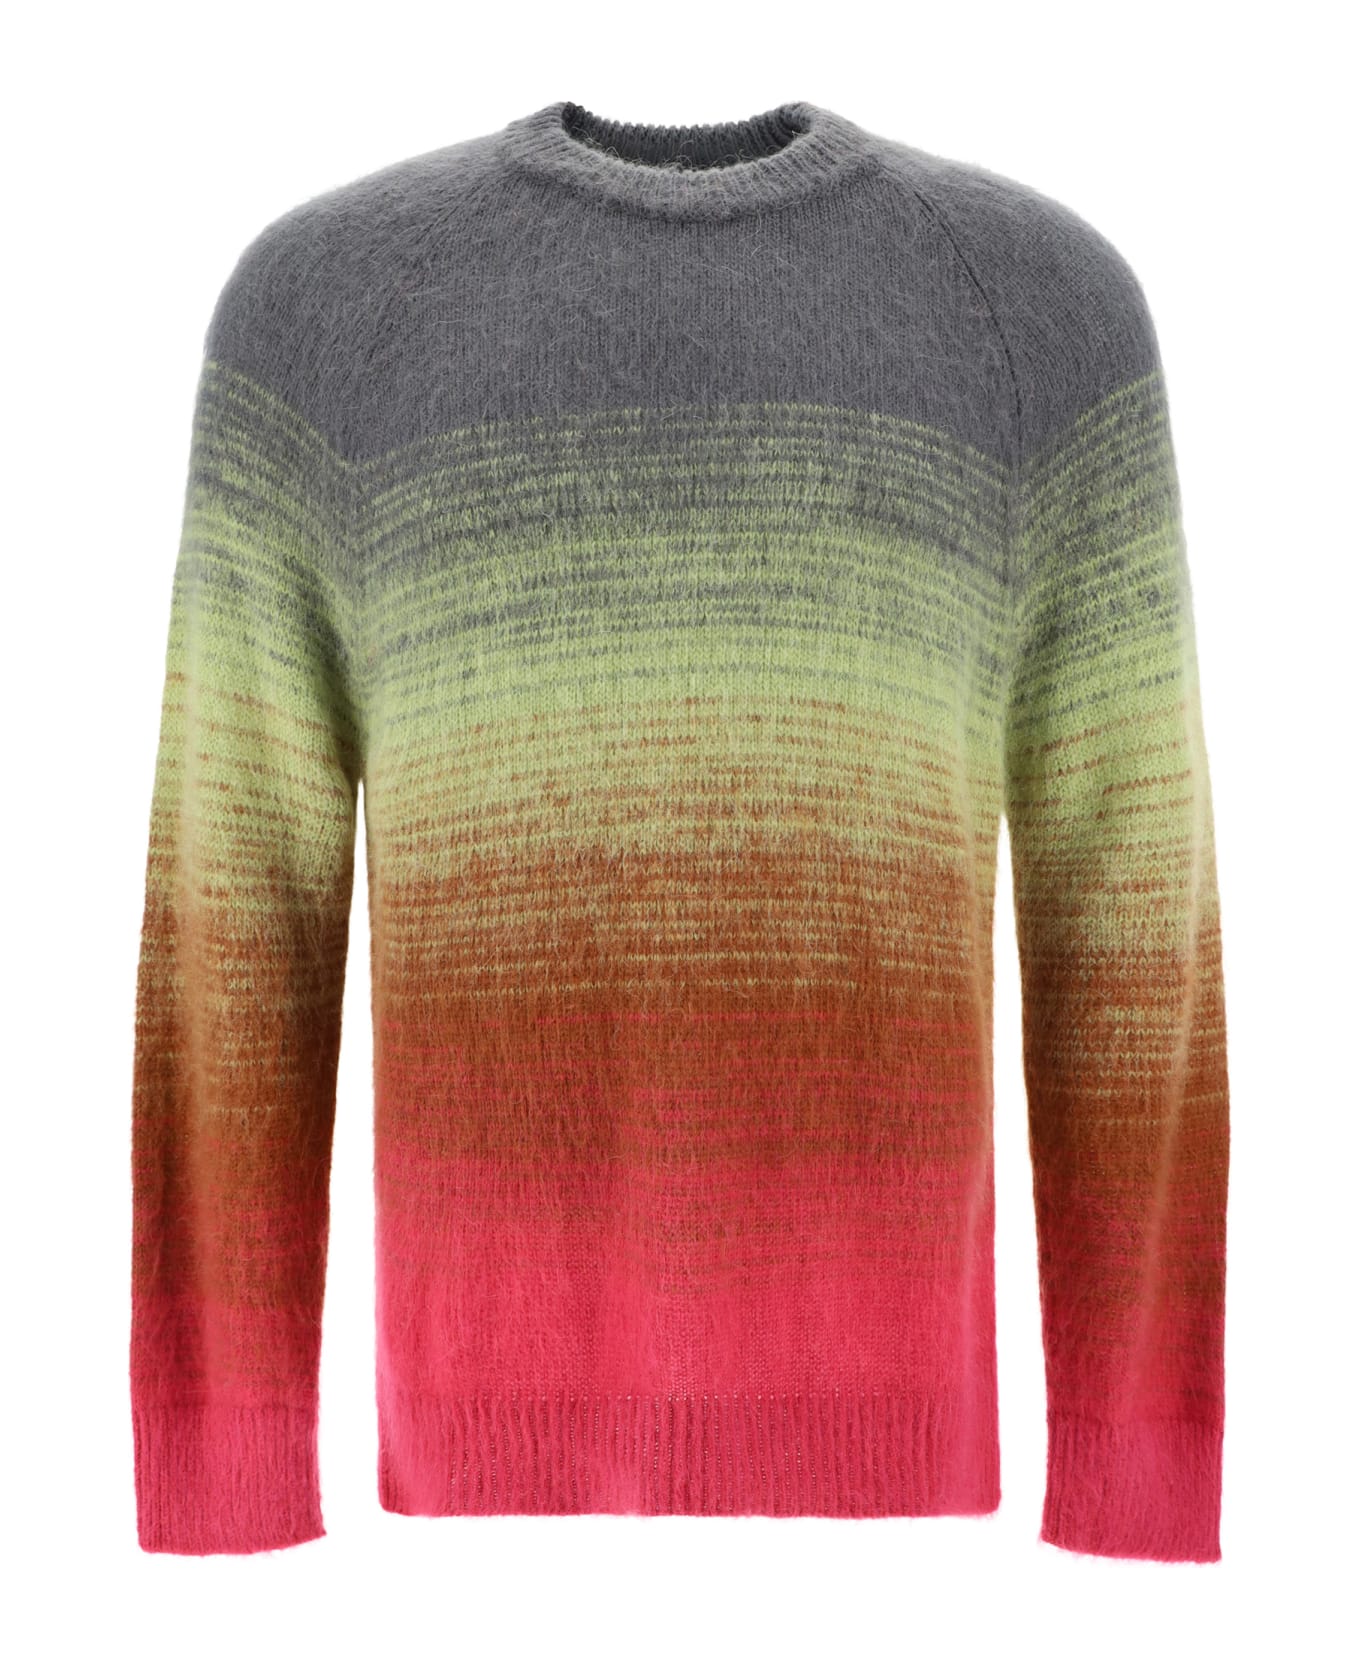 Laneus Sweater - Variante ニットウェア